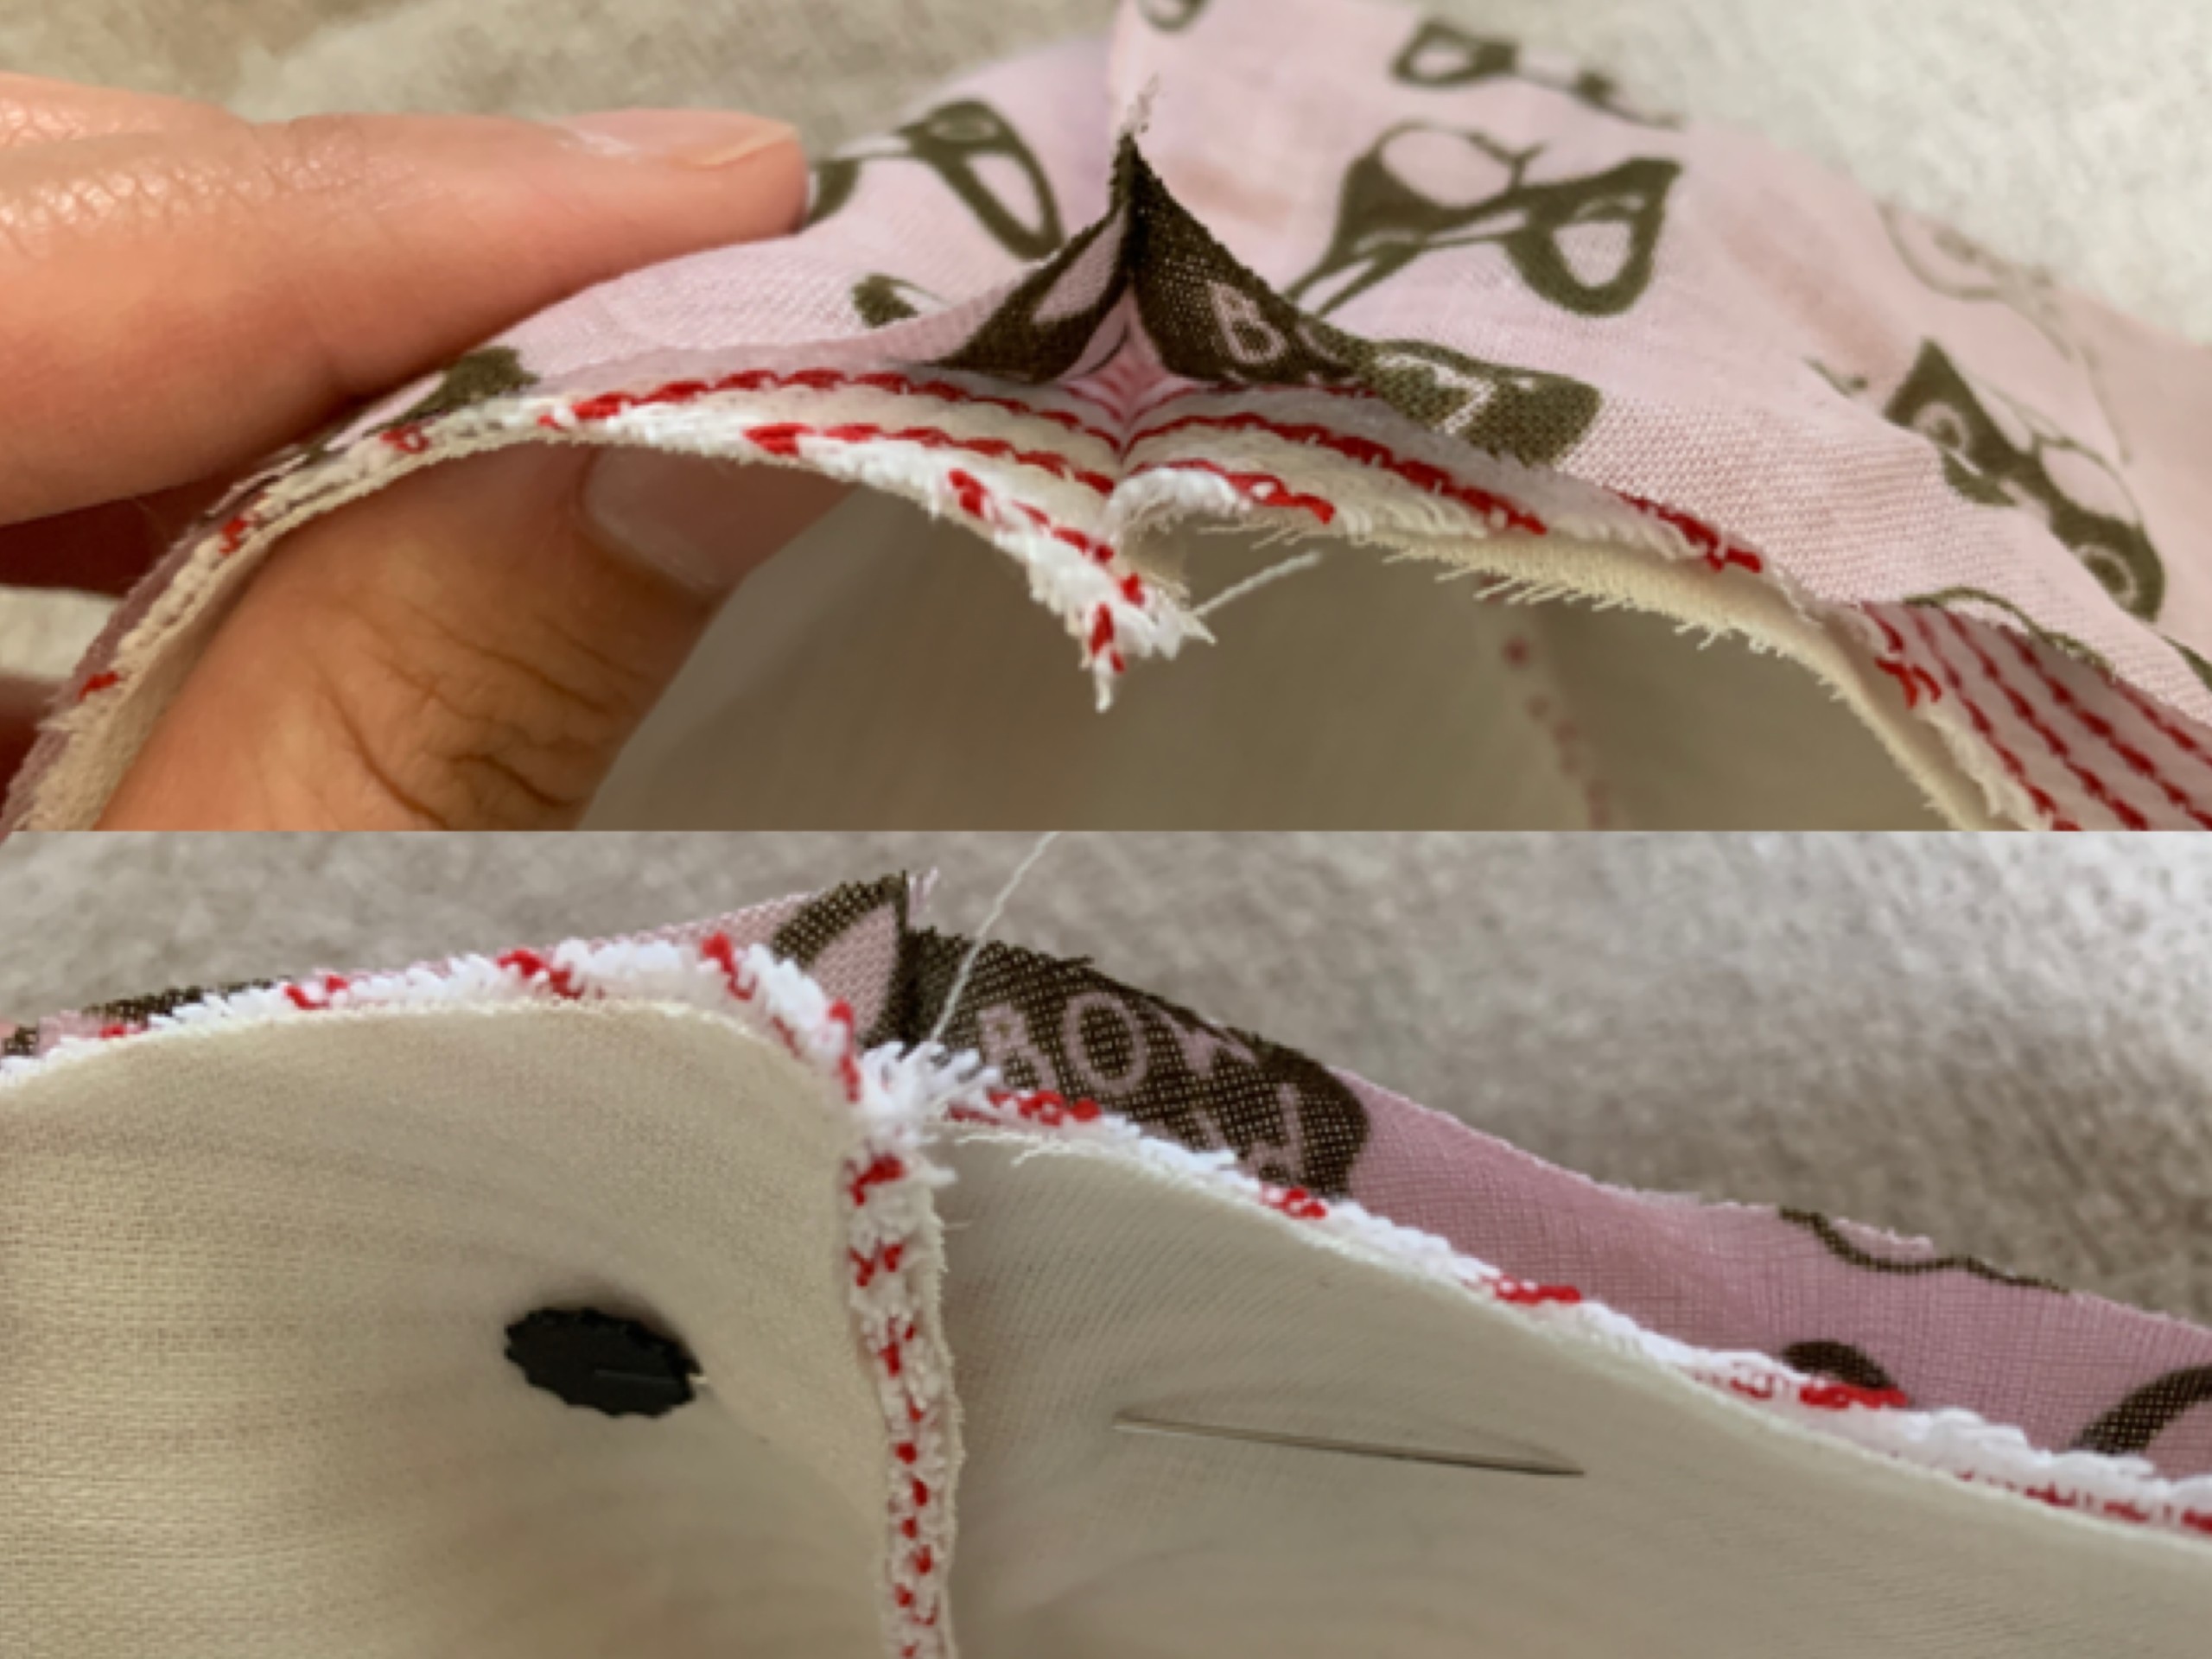 マスクの形の布の裏表を縫うためにまち針で固定している写真